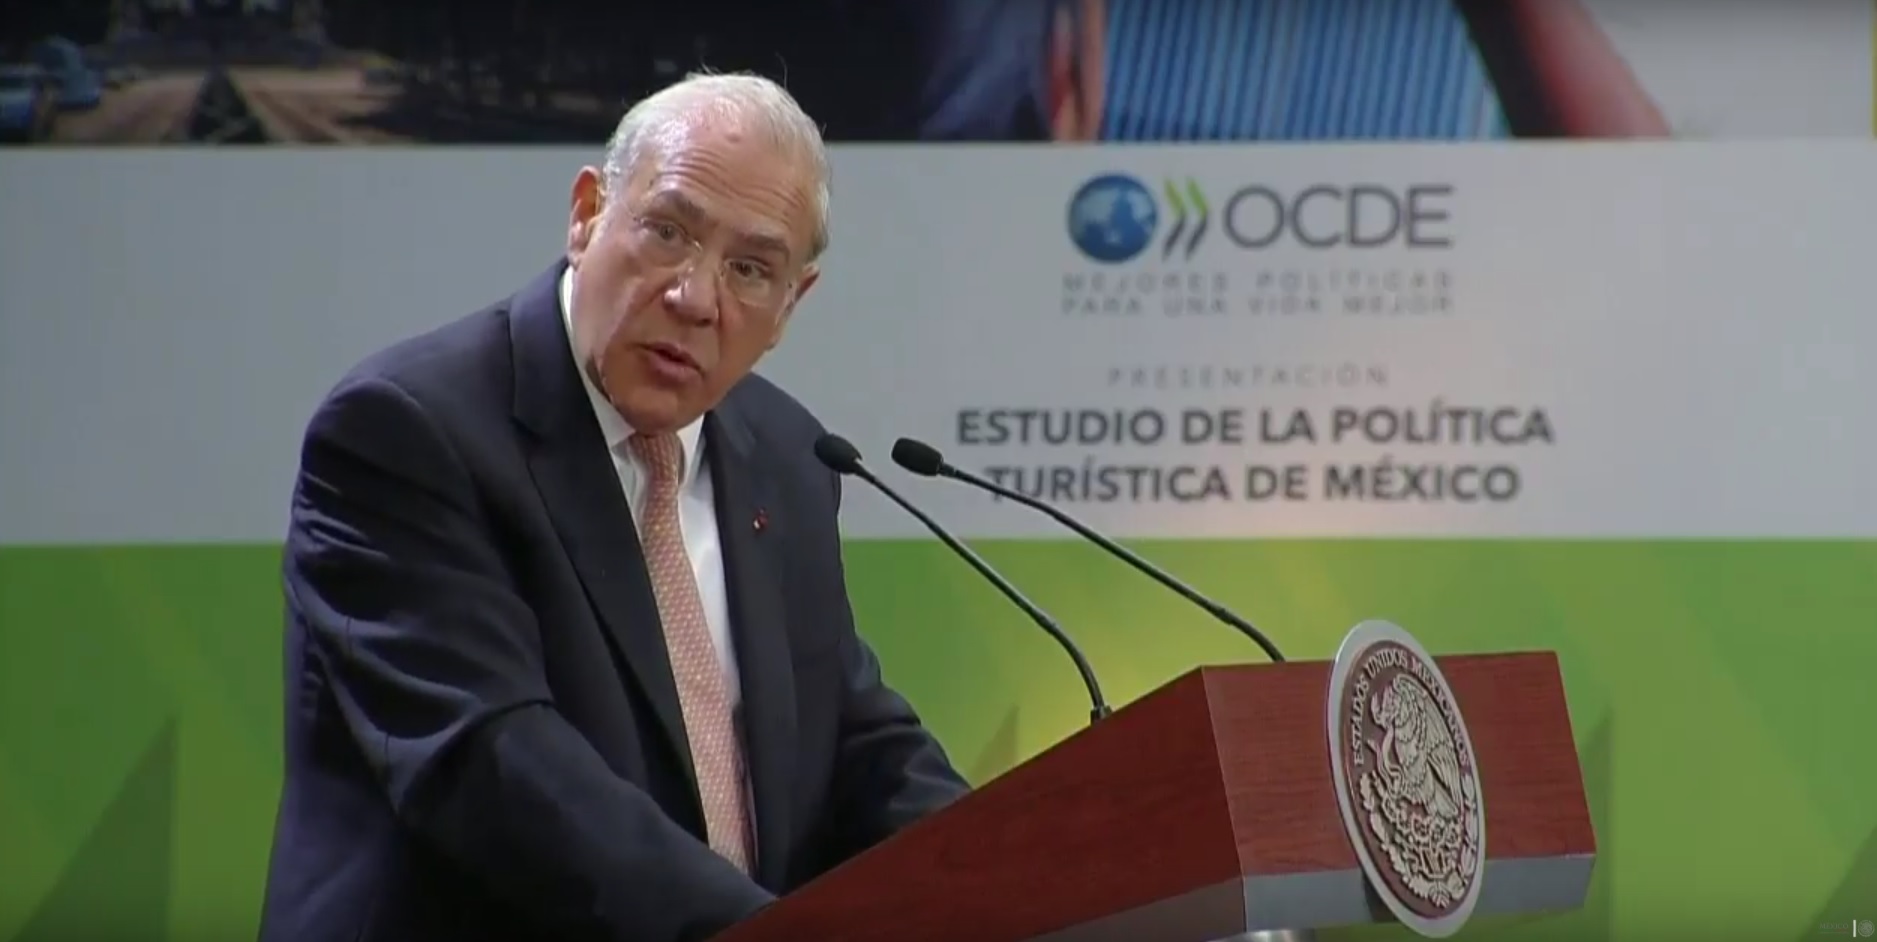 José Ángel Gurría, secretario general de la OCDE, durante la presentación del Estudio de Política Turística de México (Noticieros Televisa)